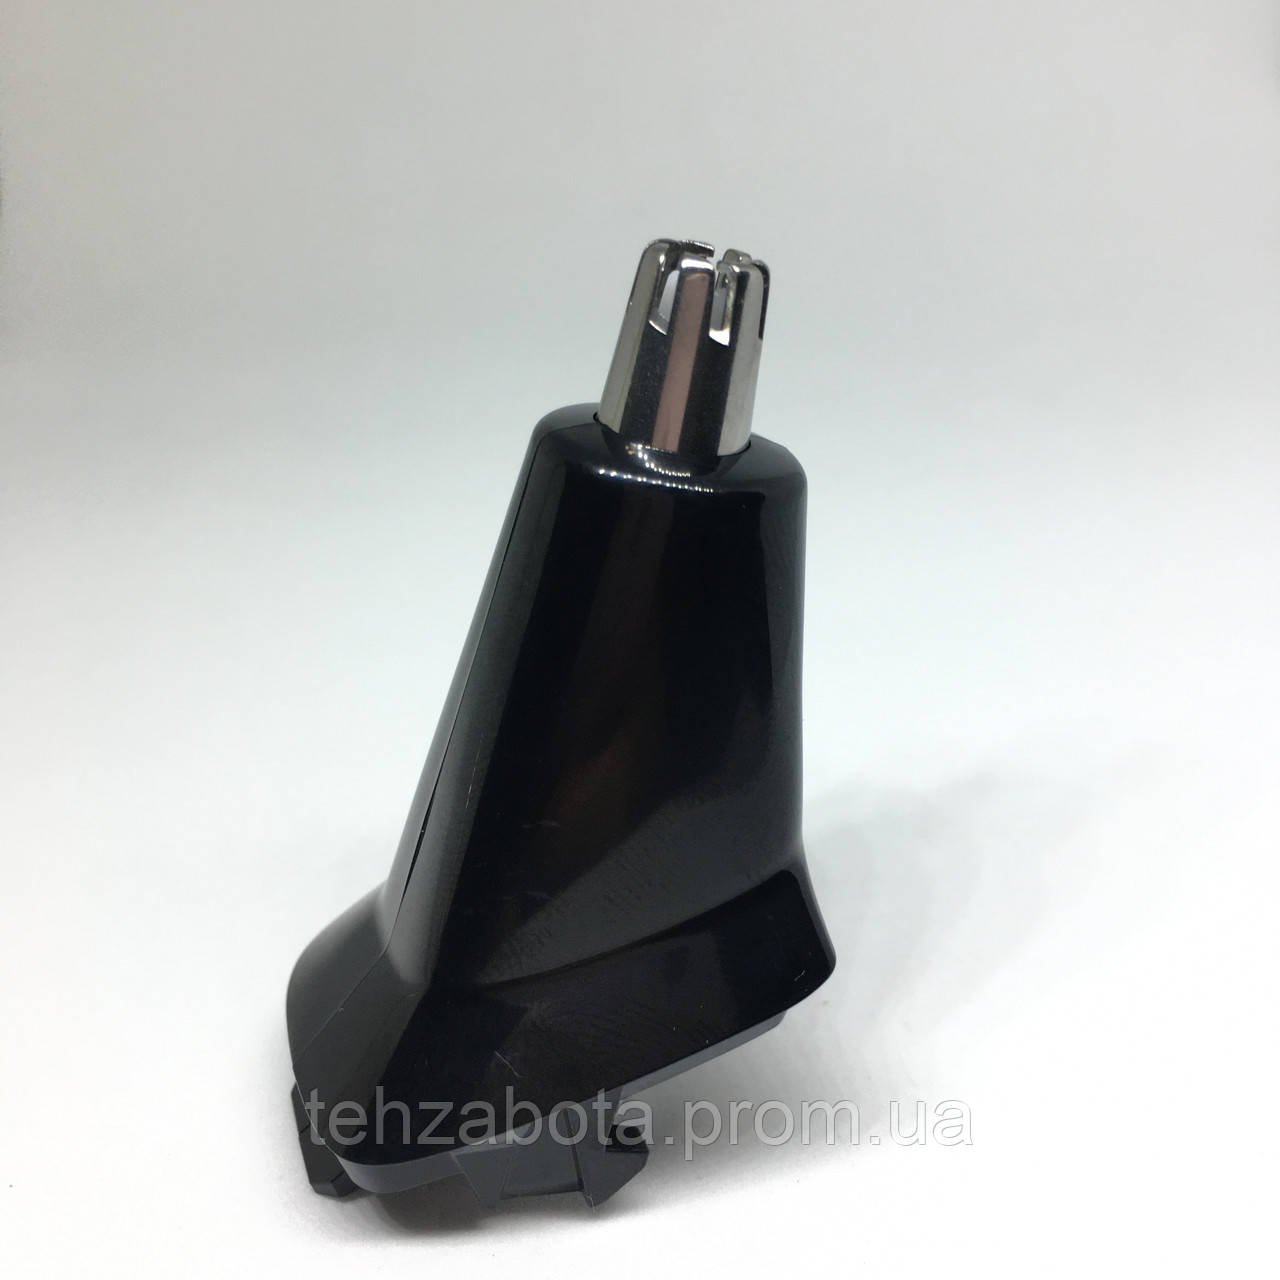 Тример для носа та вух для тримера Philips MG3720, MG3740, MG5720, MG5730, MG7770, MG7745, 422203632191